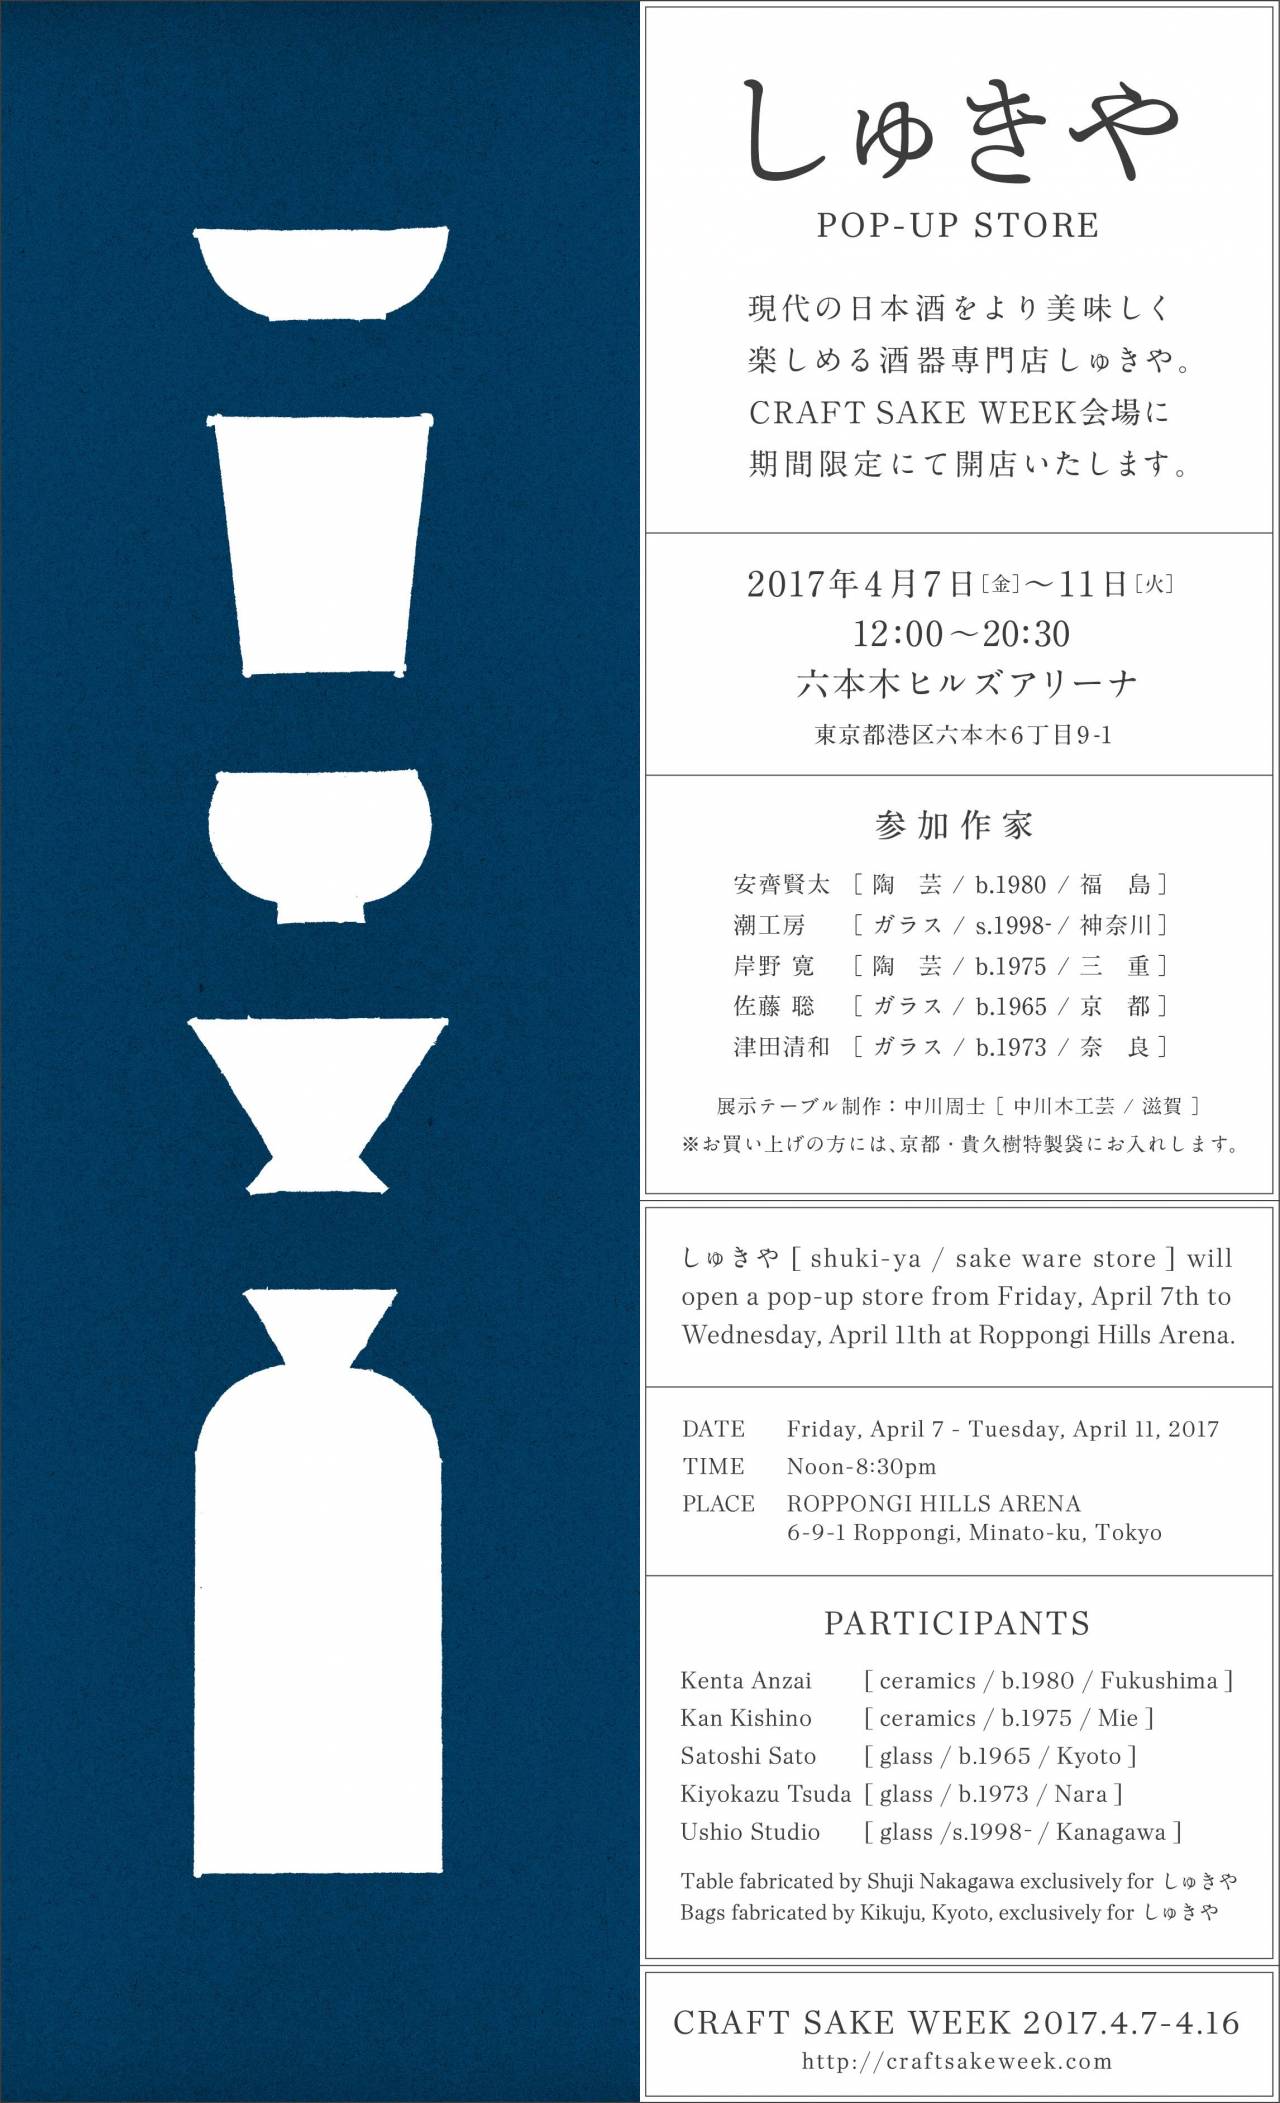 しゅきやpop Up Store Craft Sake Week 株式会社 Japan Craft Sake Company